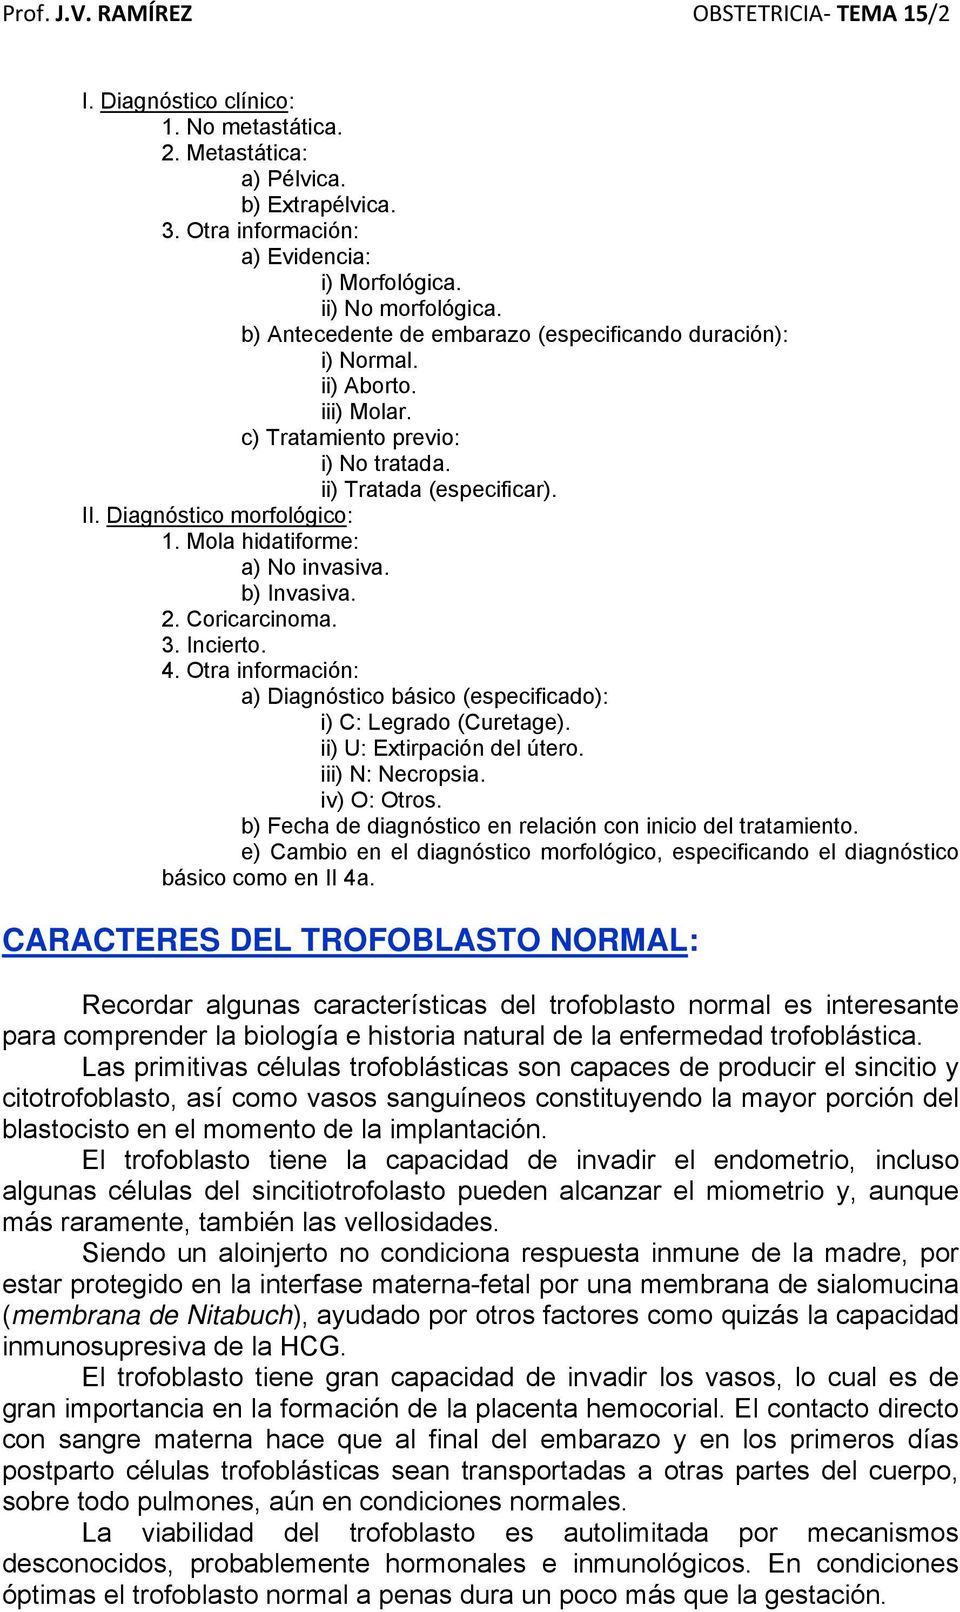 Mola hidatiforme: a) No invasiva. b) Invasiva. 2. Coricarcinoma. 3. Incierto. 4. Otra información: a) Diagnóstico básico (especificado): i) C: Legrado (Curetage). ii) U: Extirpación del útero.